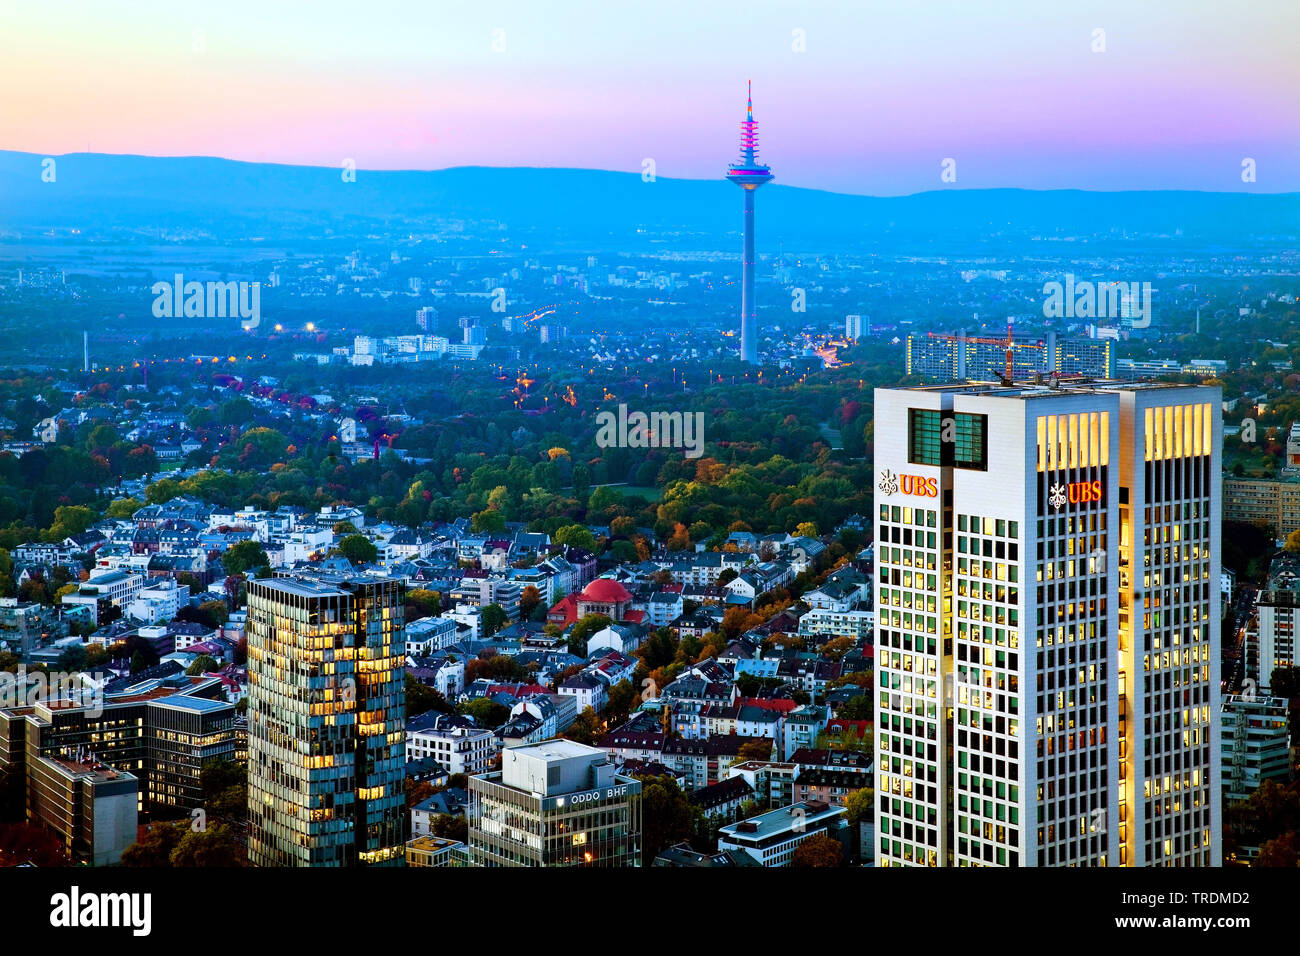 Vista desde la torre principal de la torre de la televisión en la noche, Alemania, Hesse, Frankfurt am Main Foto de stock